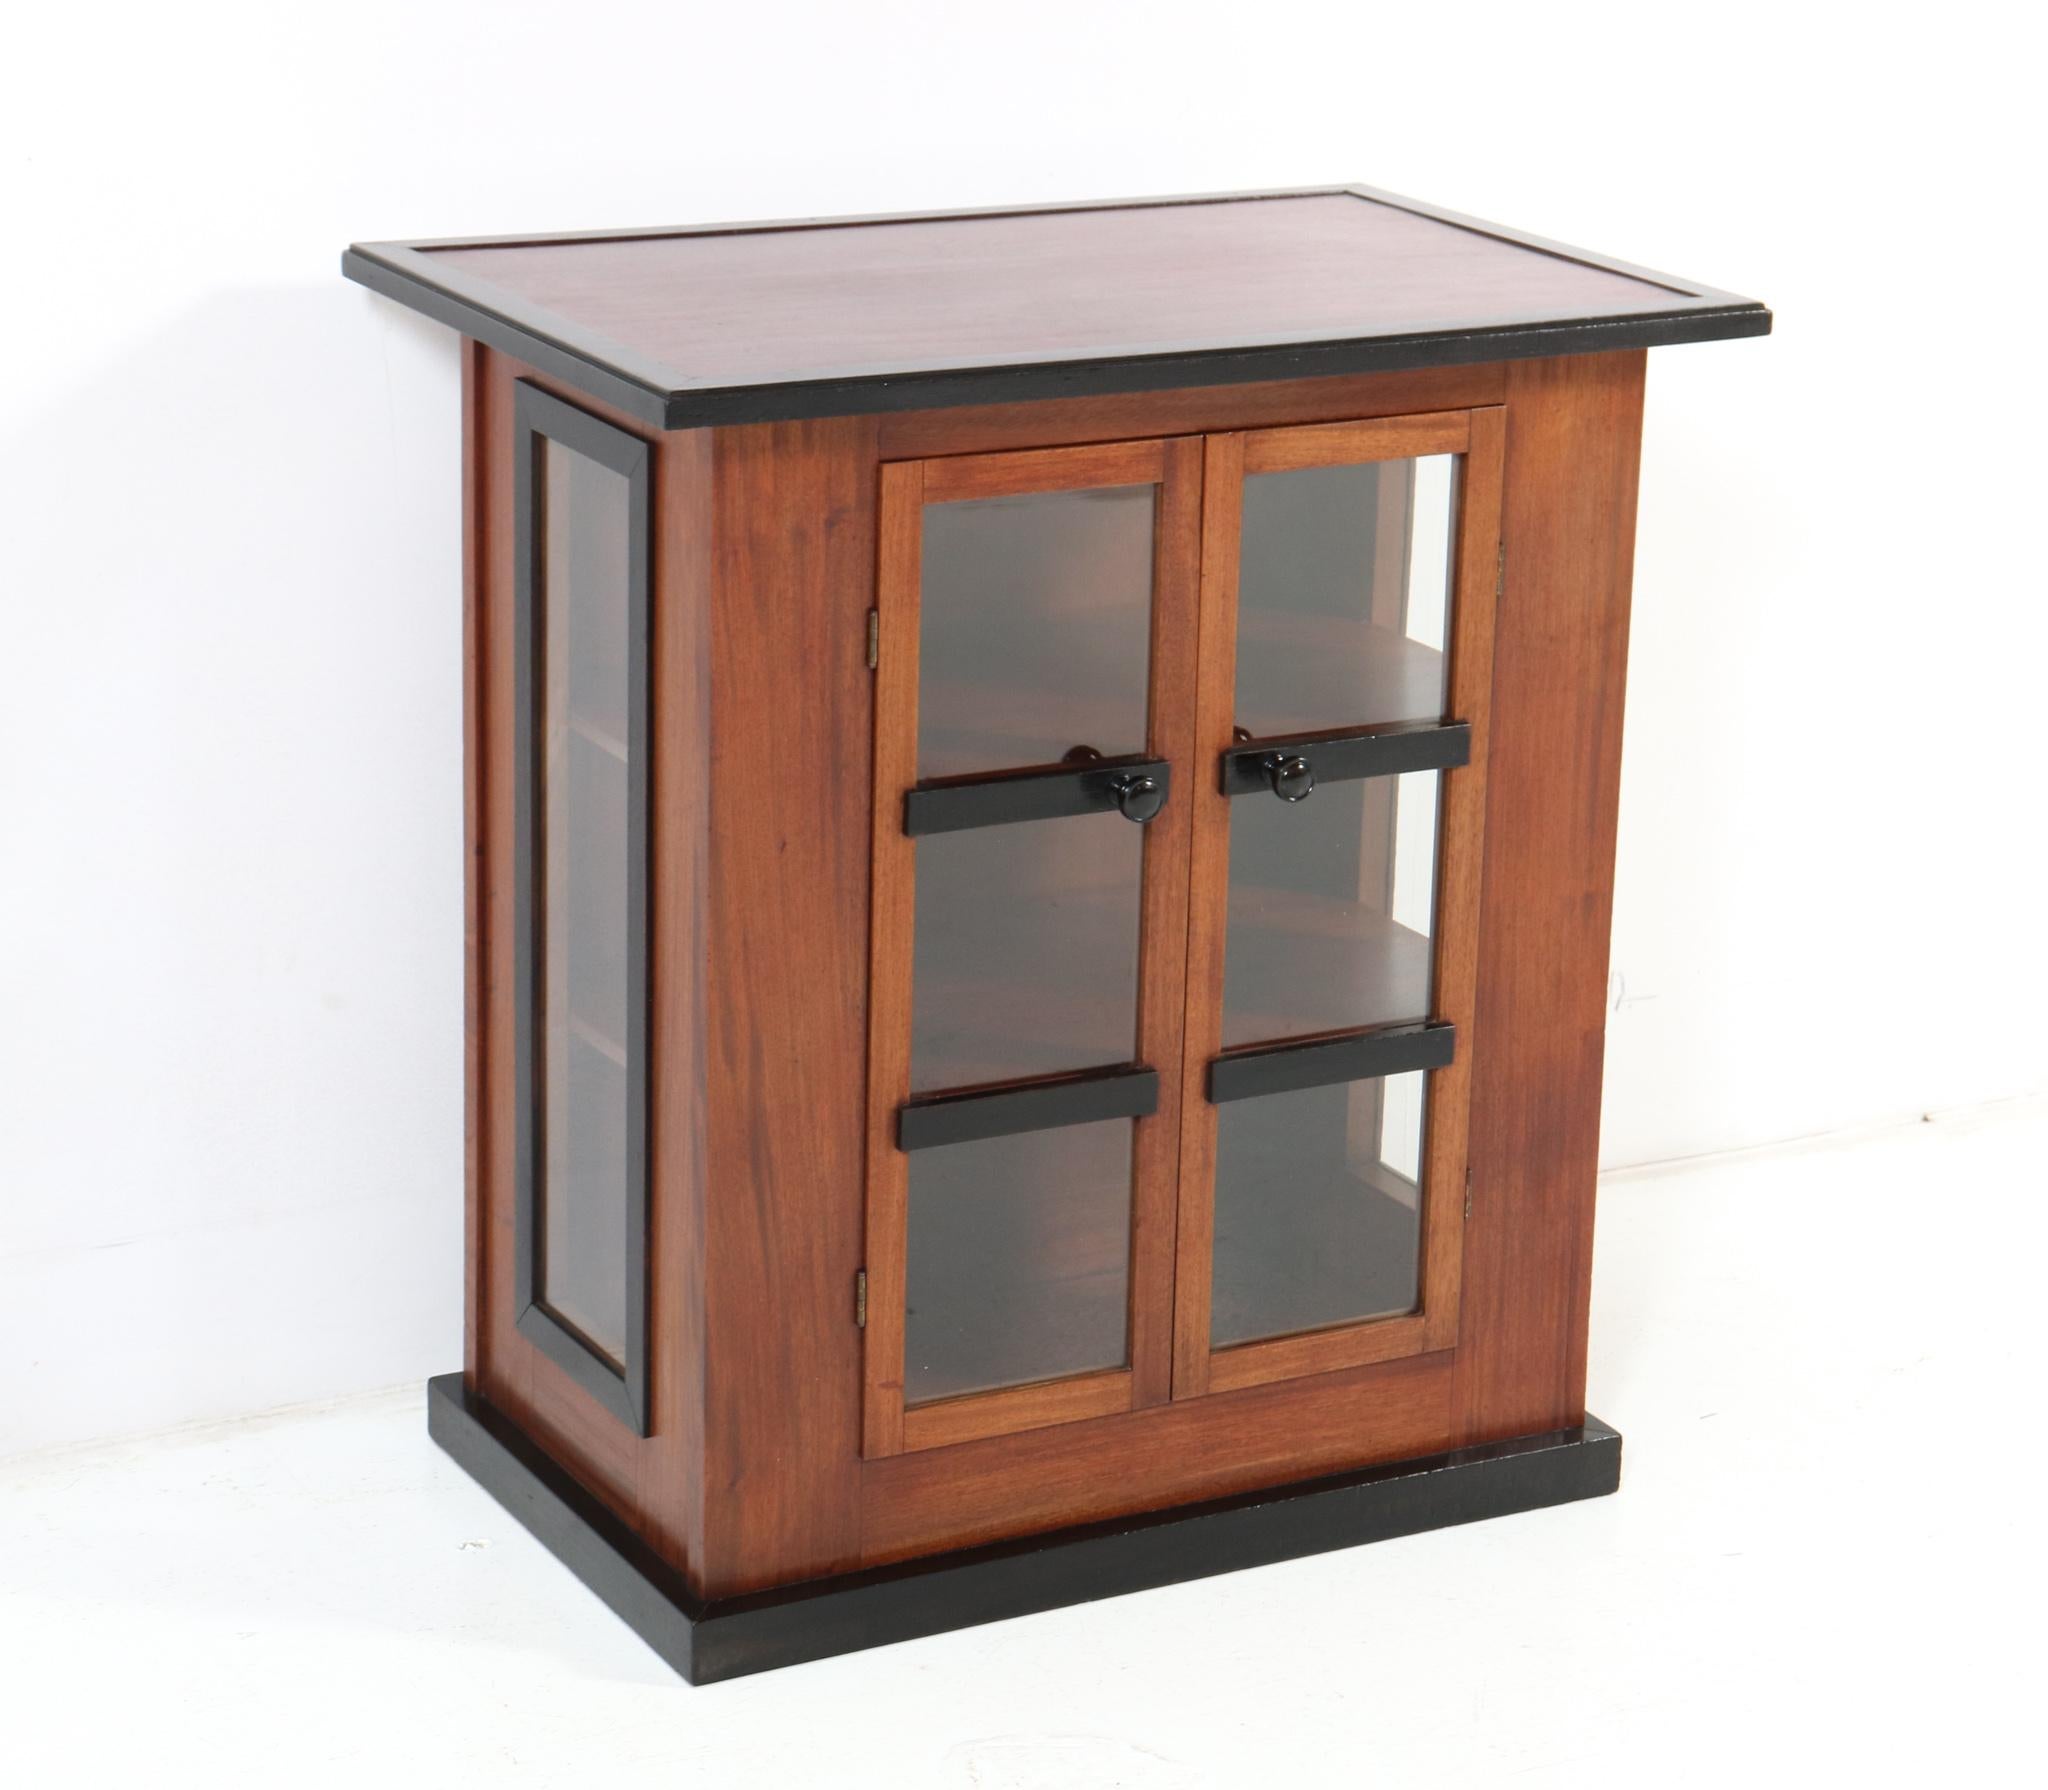 Early 20th Century Walnut Art Deco Modernist Tea Cabinet by Jan Brunott, 1920s For Sale